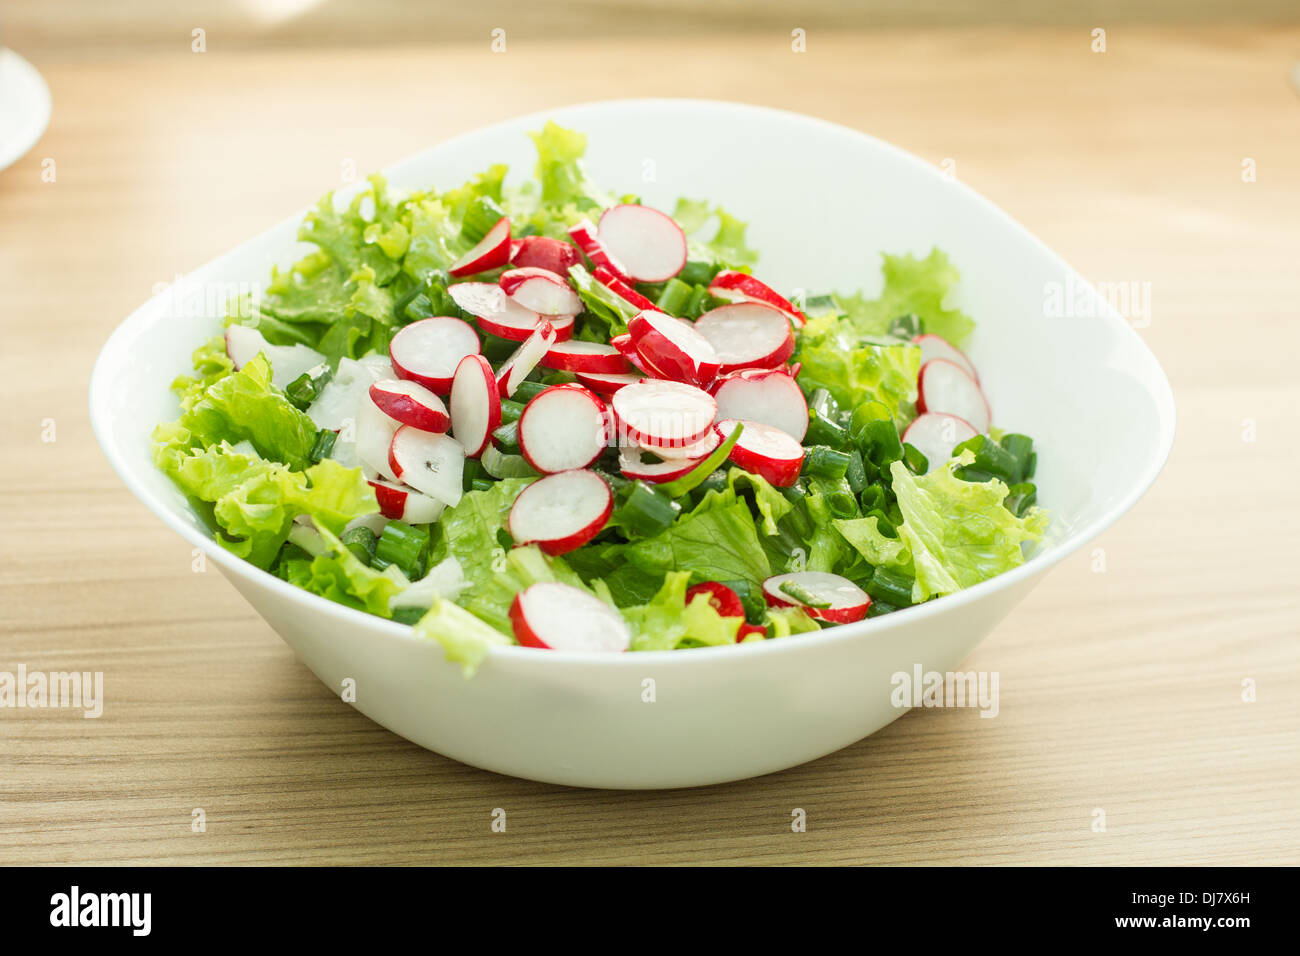 Healthy food fresh green salad. Stock Photo